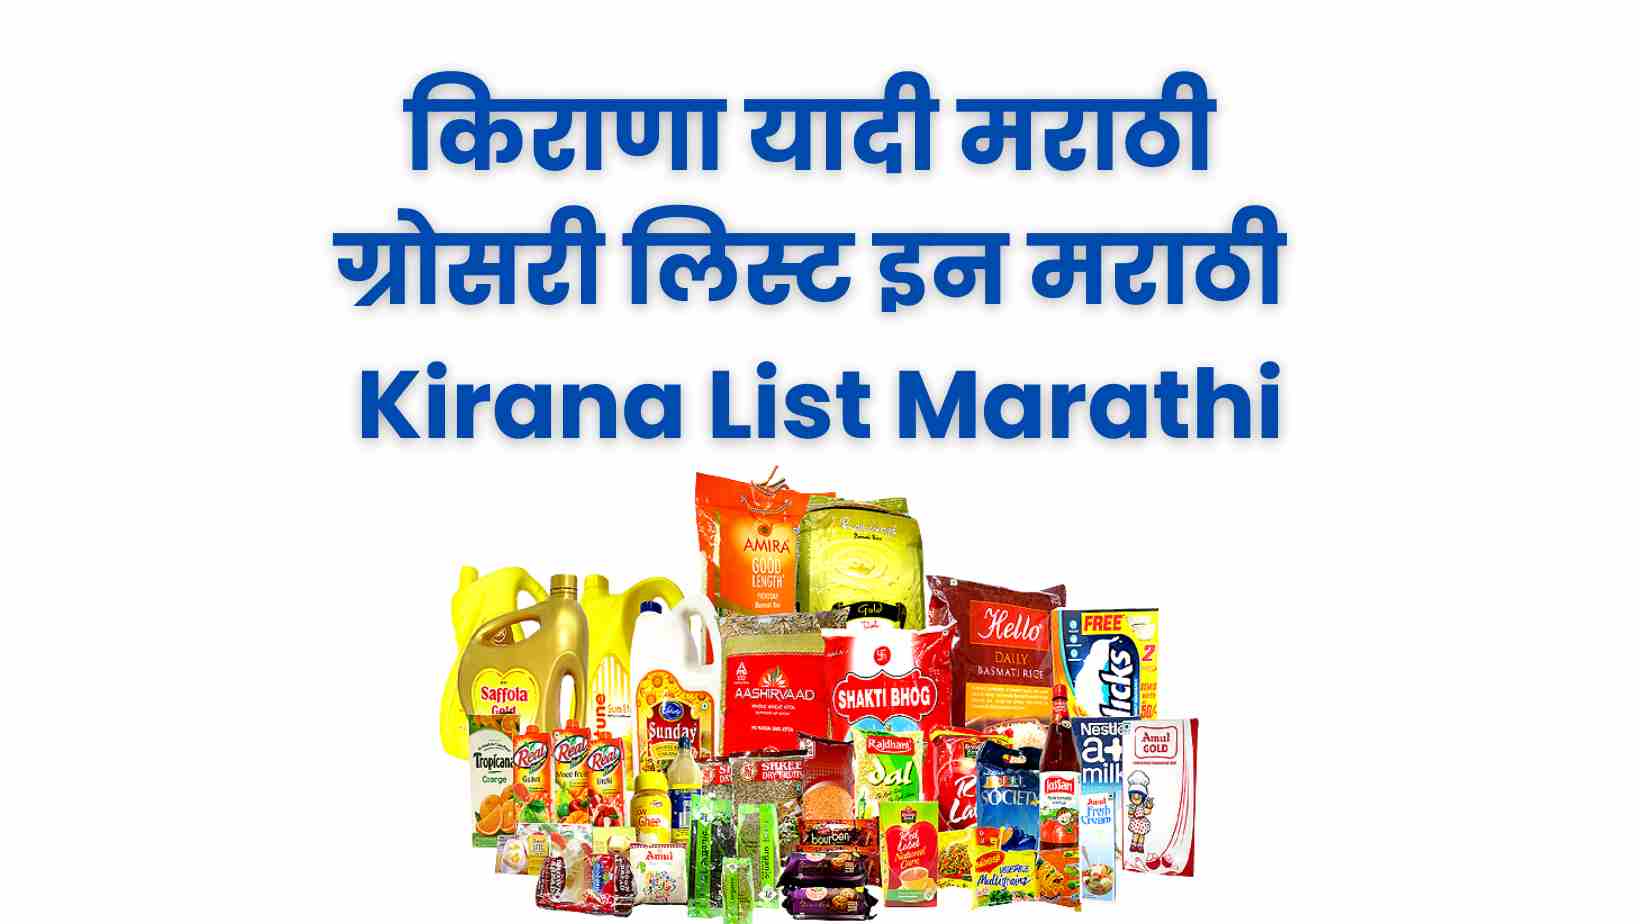 Kirana List Marathi